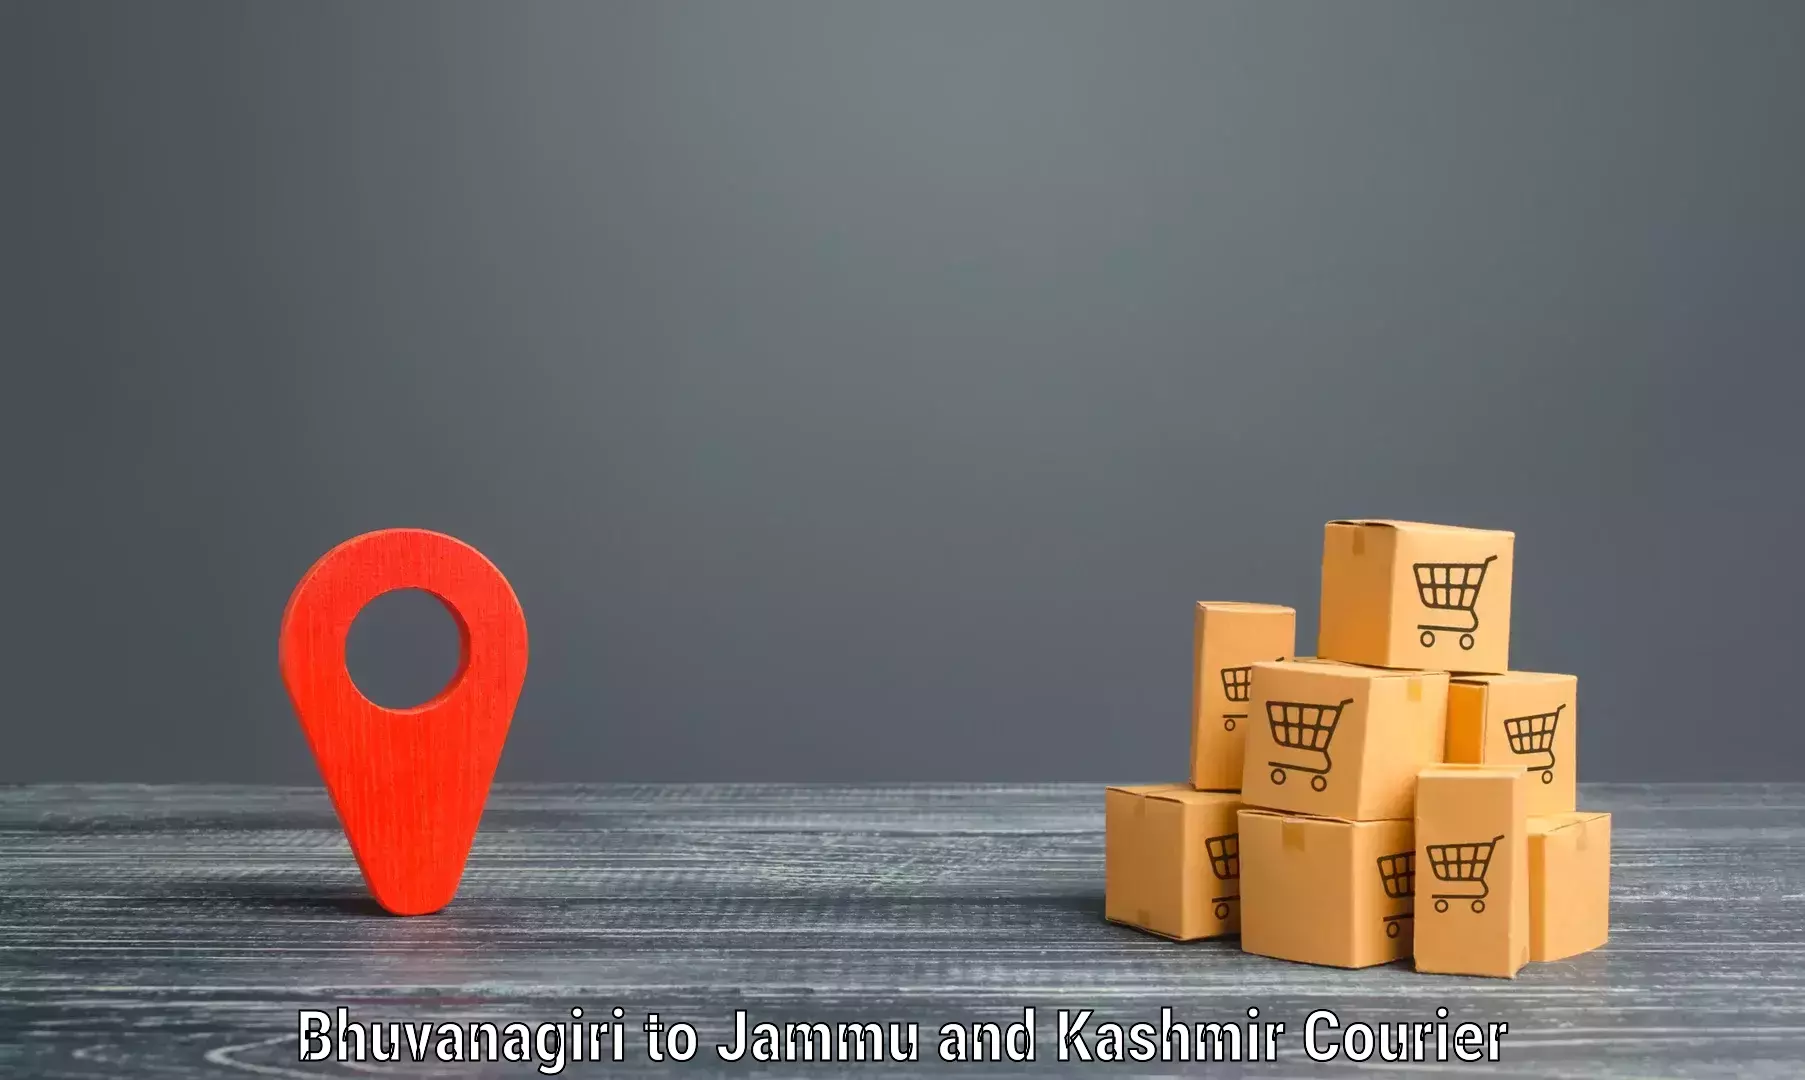 Versatile courier offerings Bhuvanagiri to Srinagar Kashmir